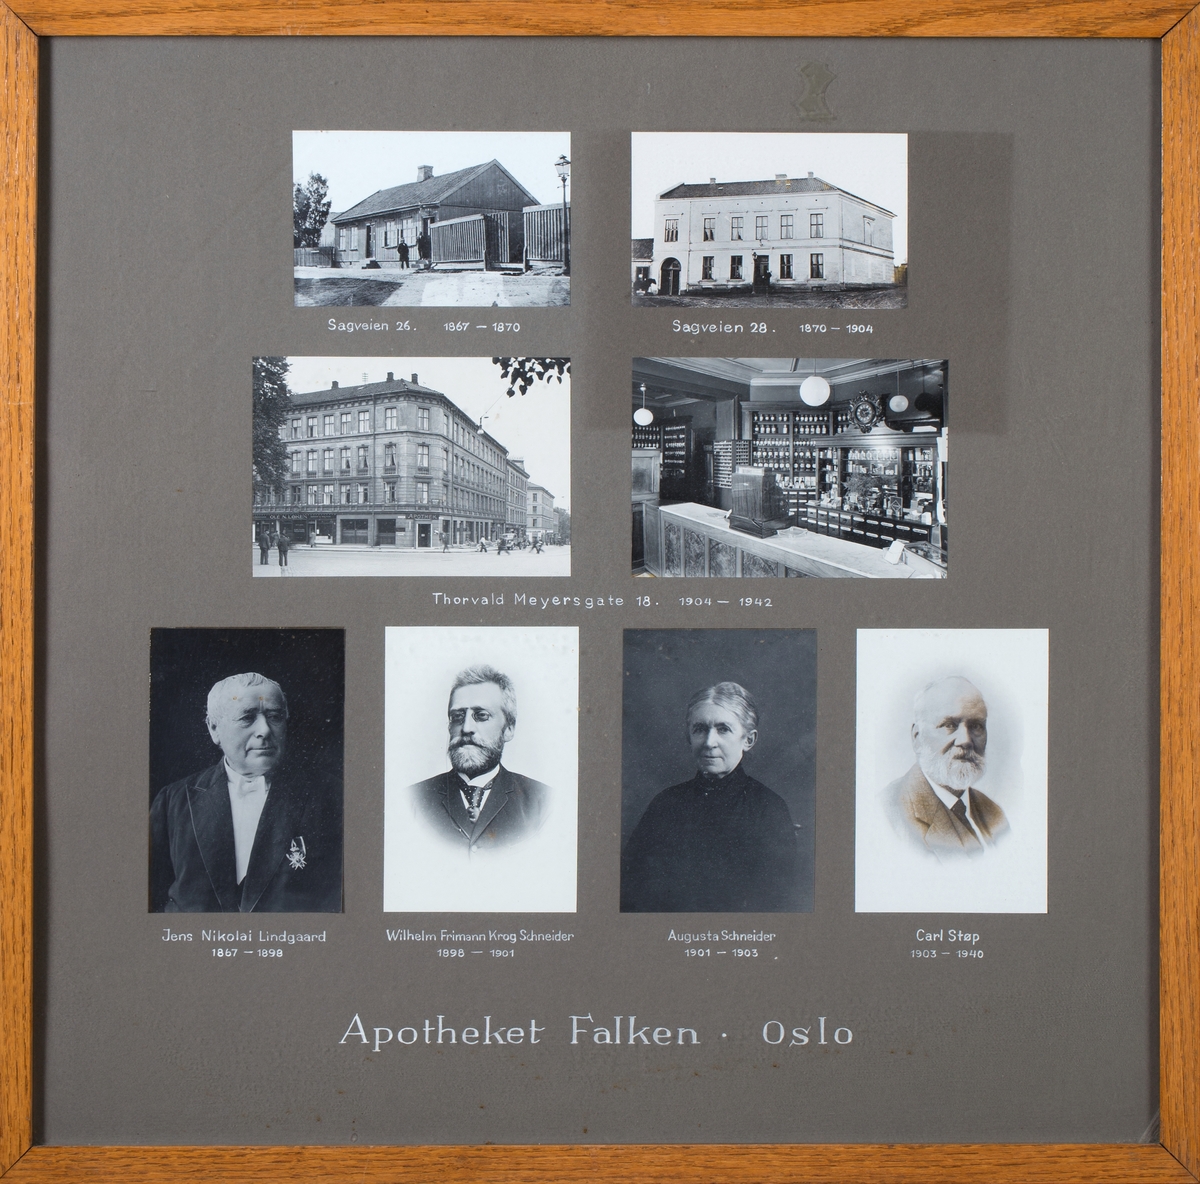 Tre gatebilder, et interiørbilde, 4 portretter relatert til historien til Apoteket Falken, Oslo